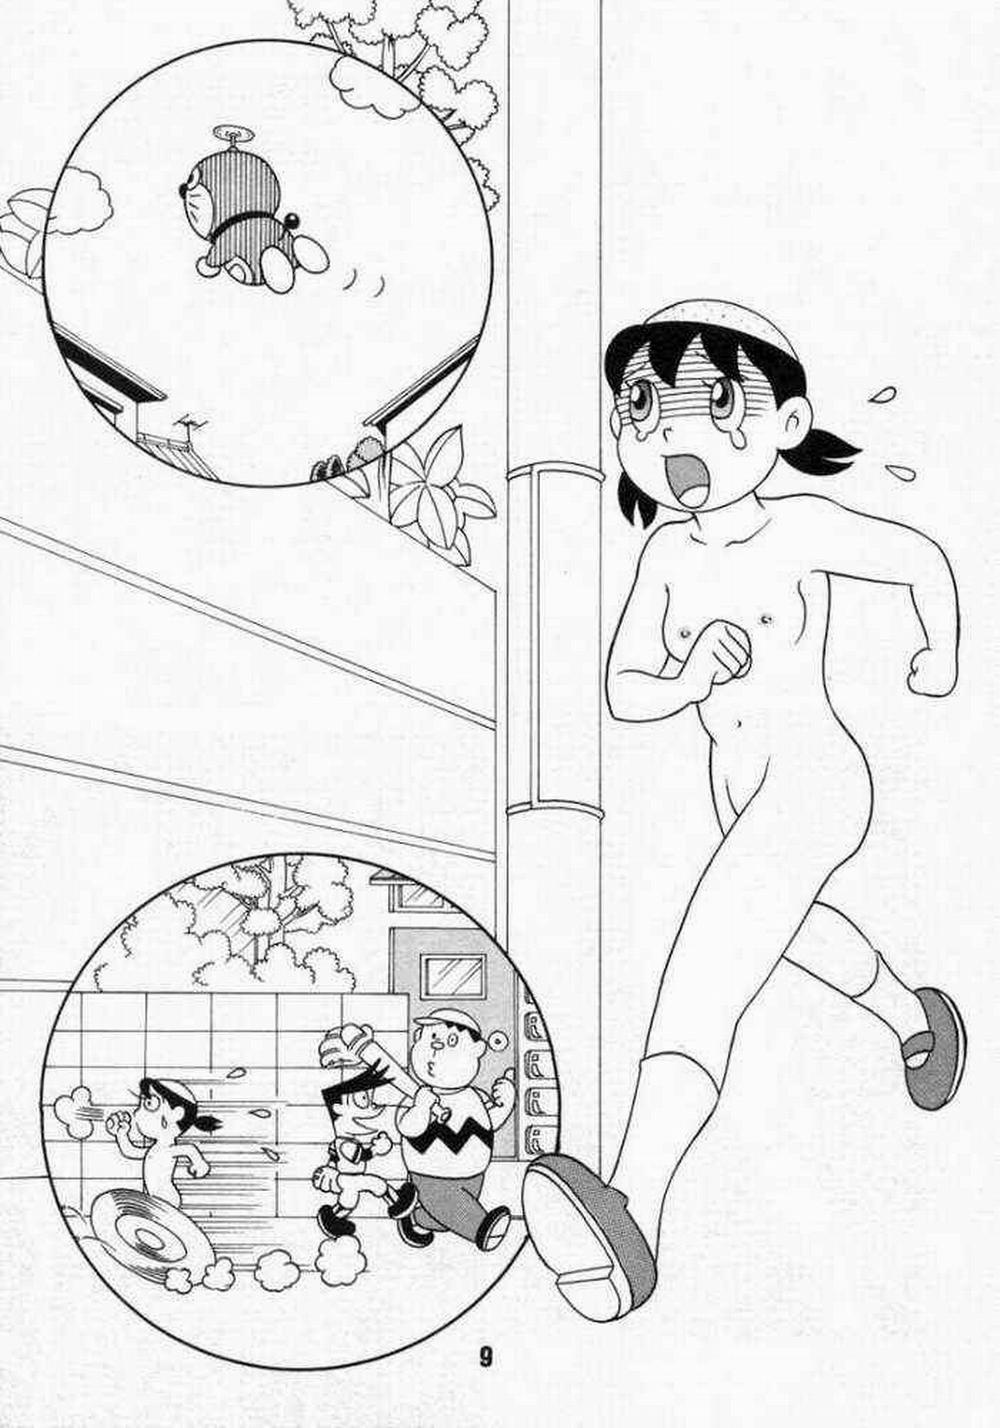 Tuyển Tập Doraemon Doujinshi 18+ Chương 10 Xuka v m t ng h nh Trang 7